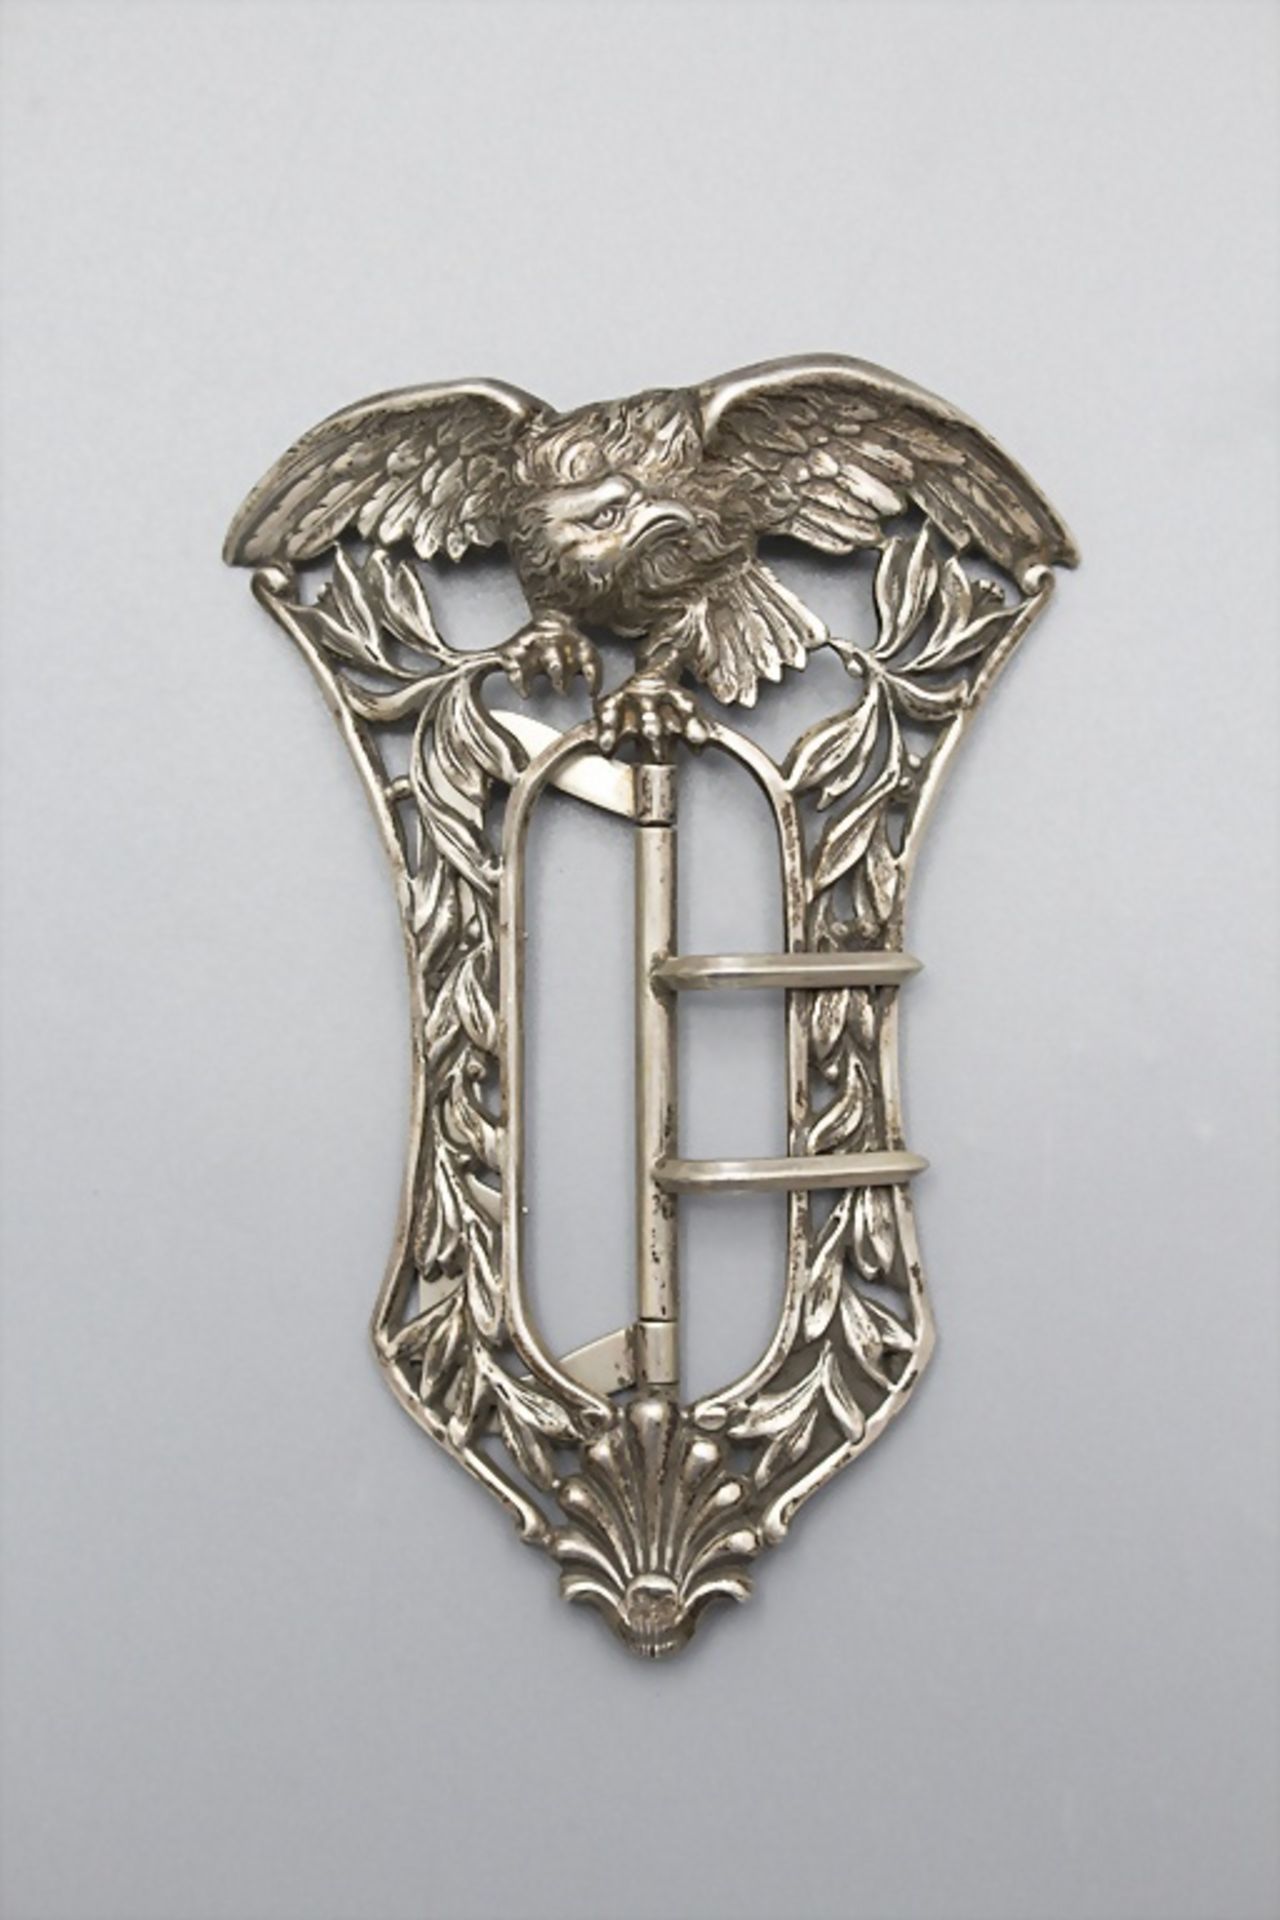 Jugendstil Silber Gürtelschließe mit Adler / An Art Nouveau silver belt buckle with an eagle, ...